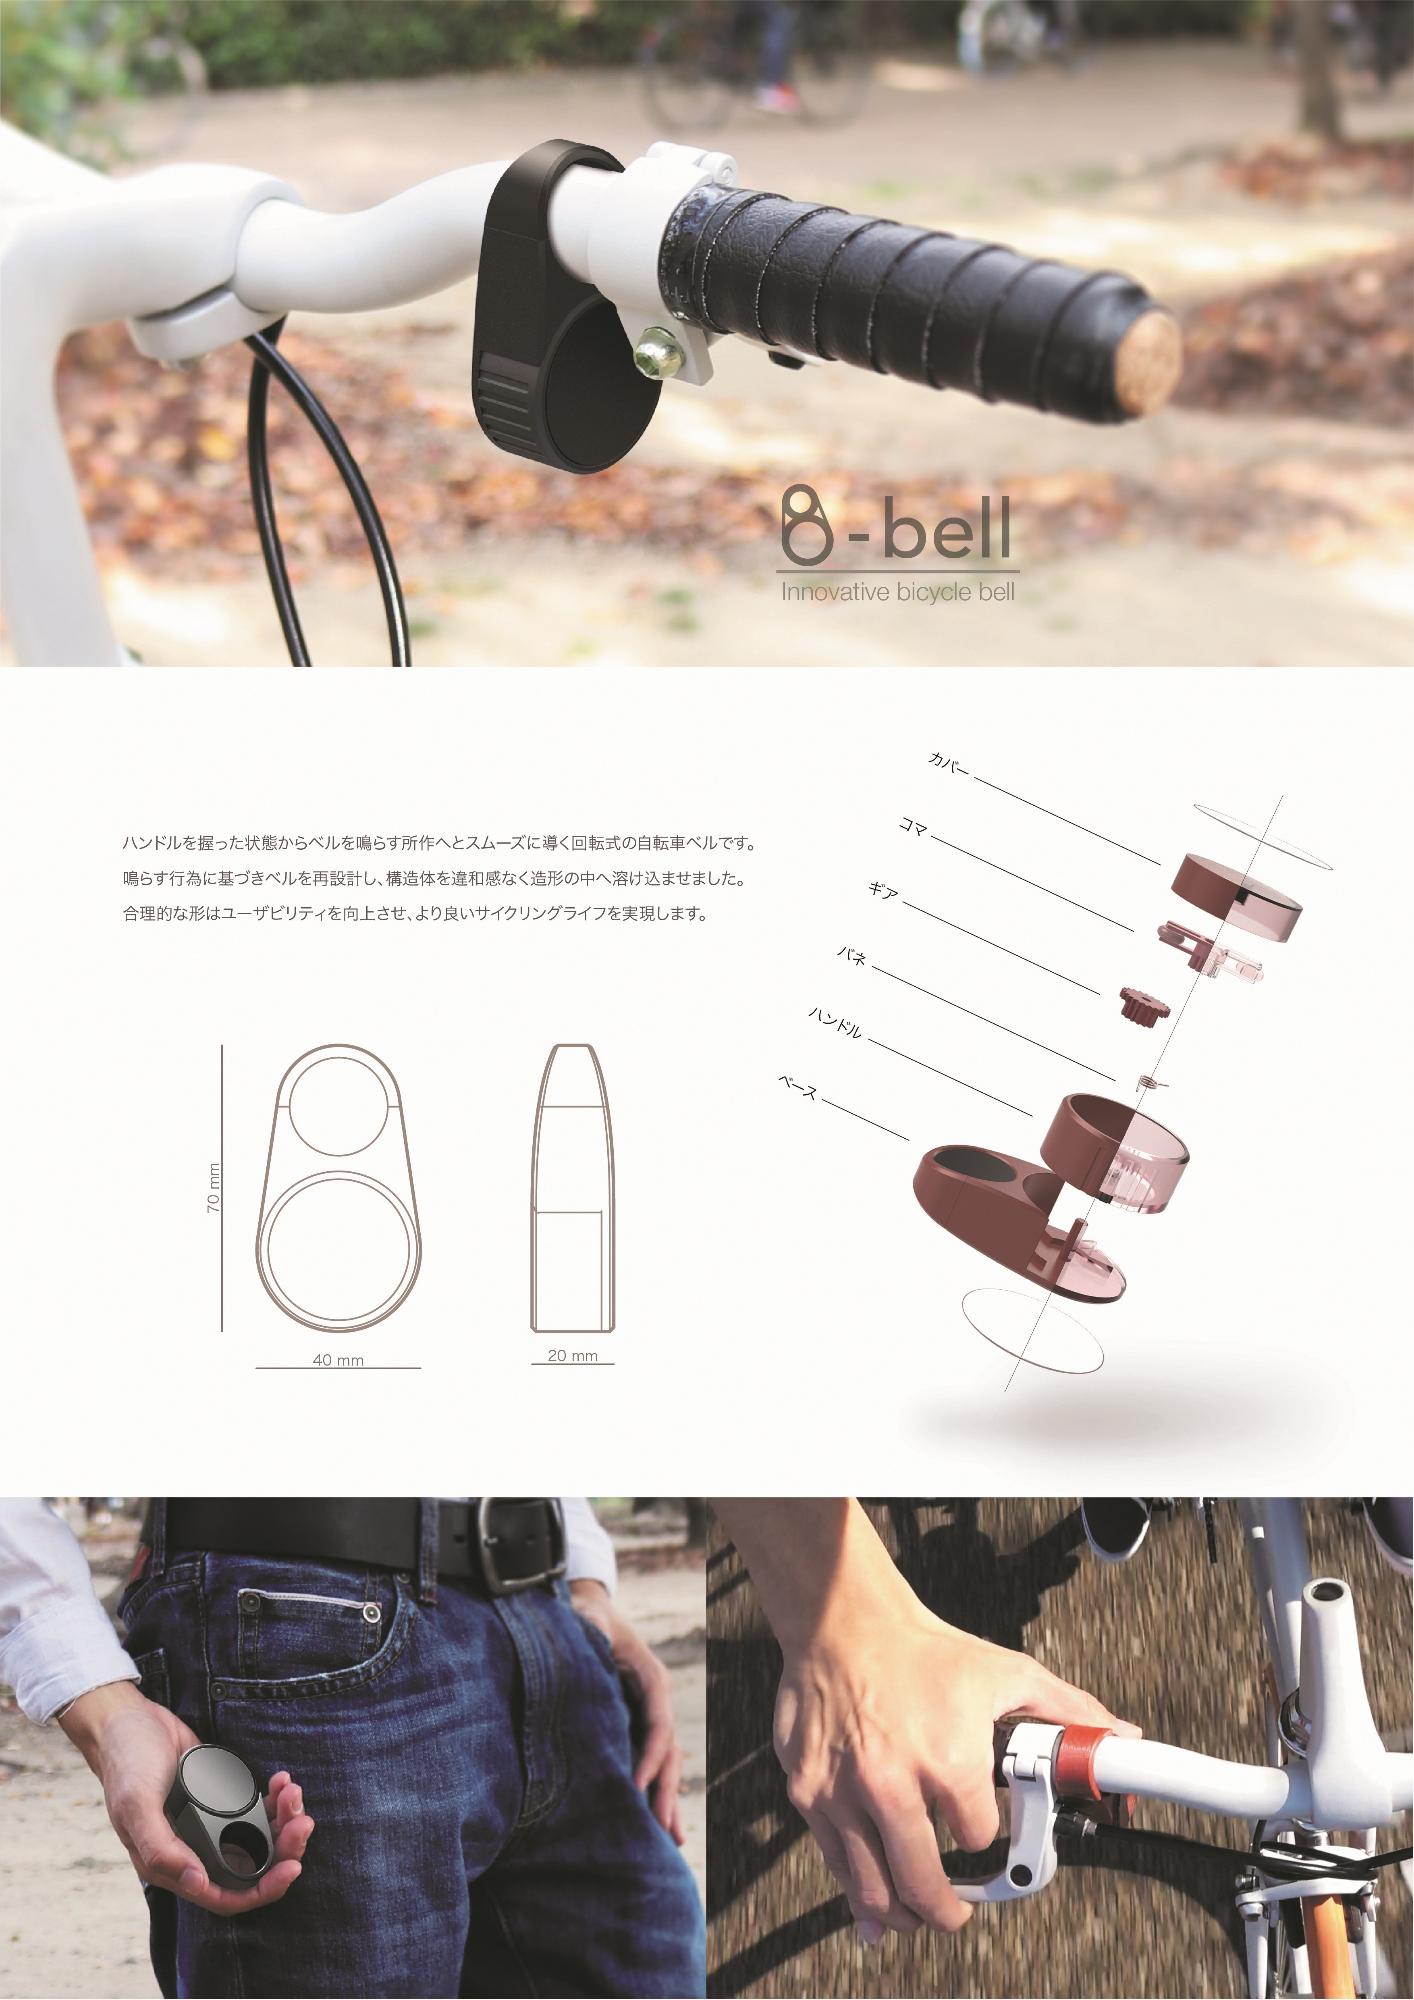 準大賞受賞作品「B-bell」のコンセプトイメージカタログ